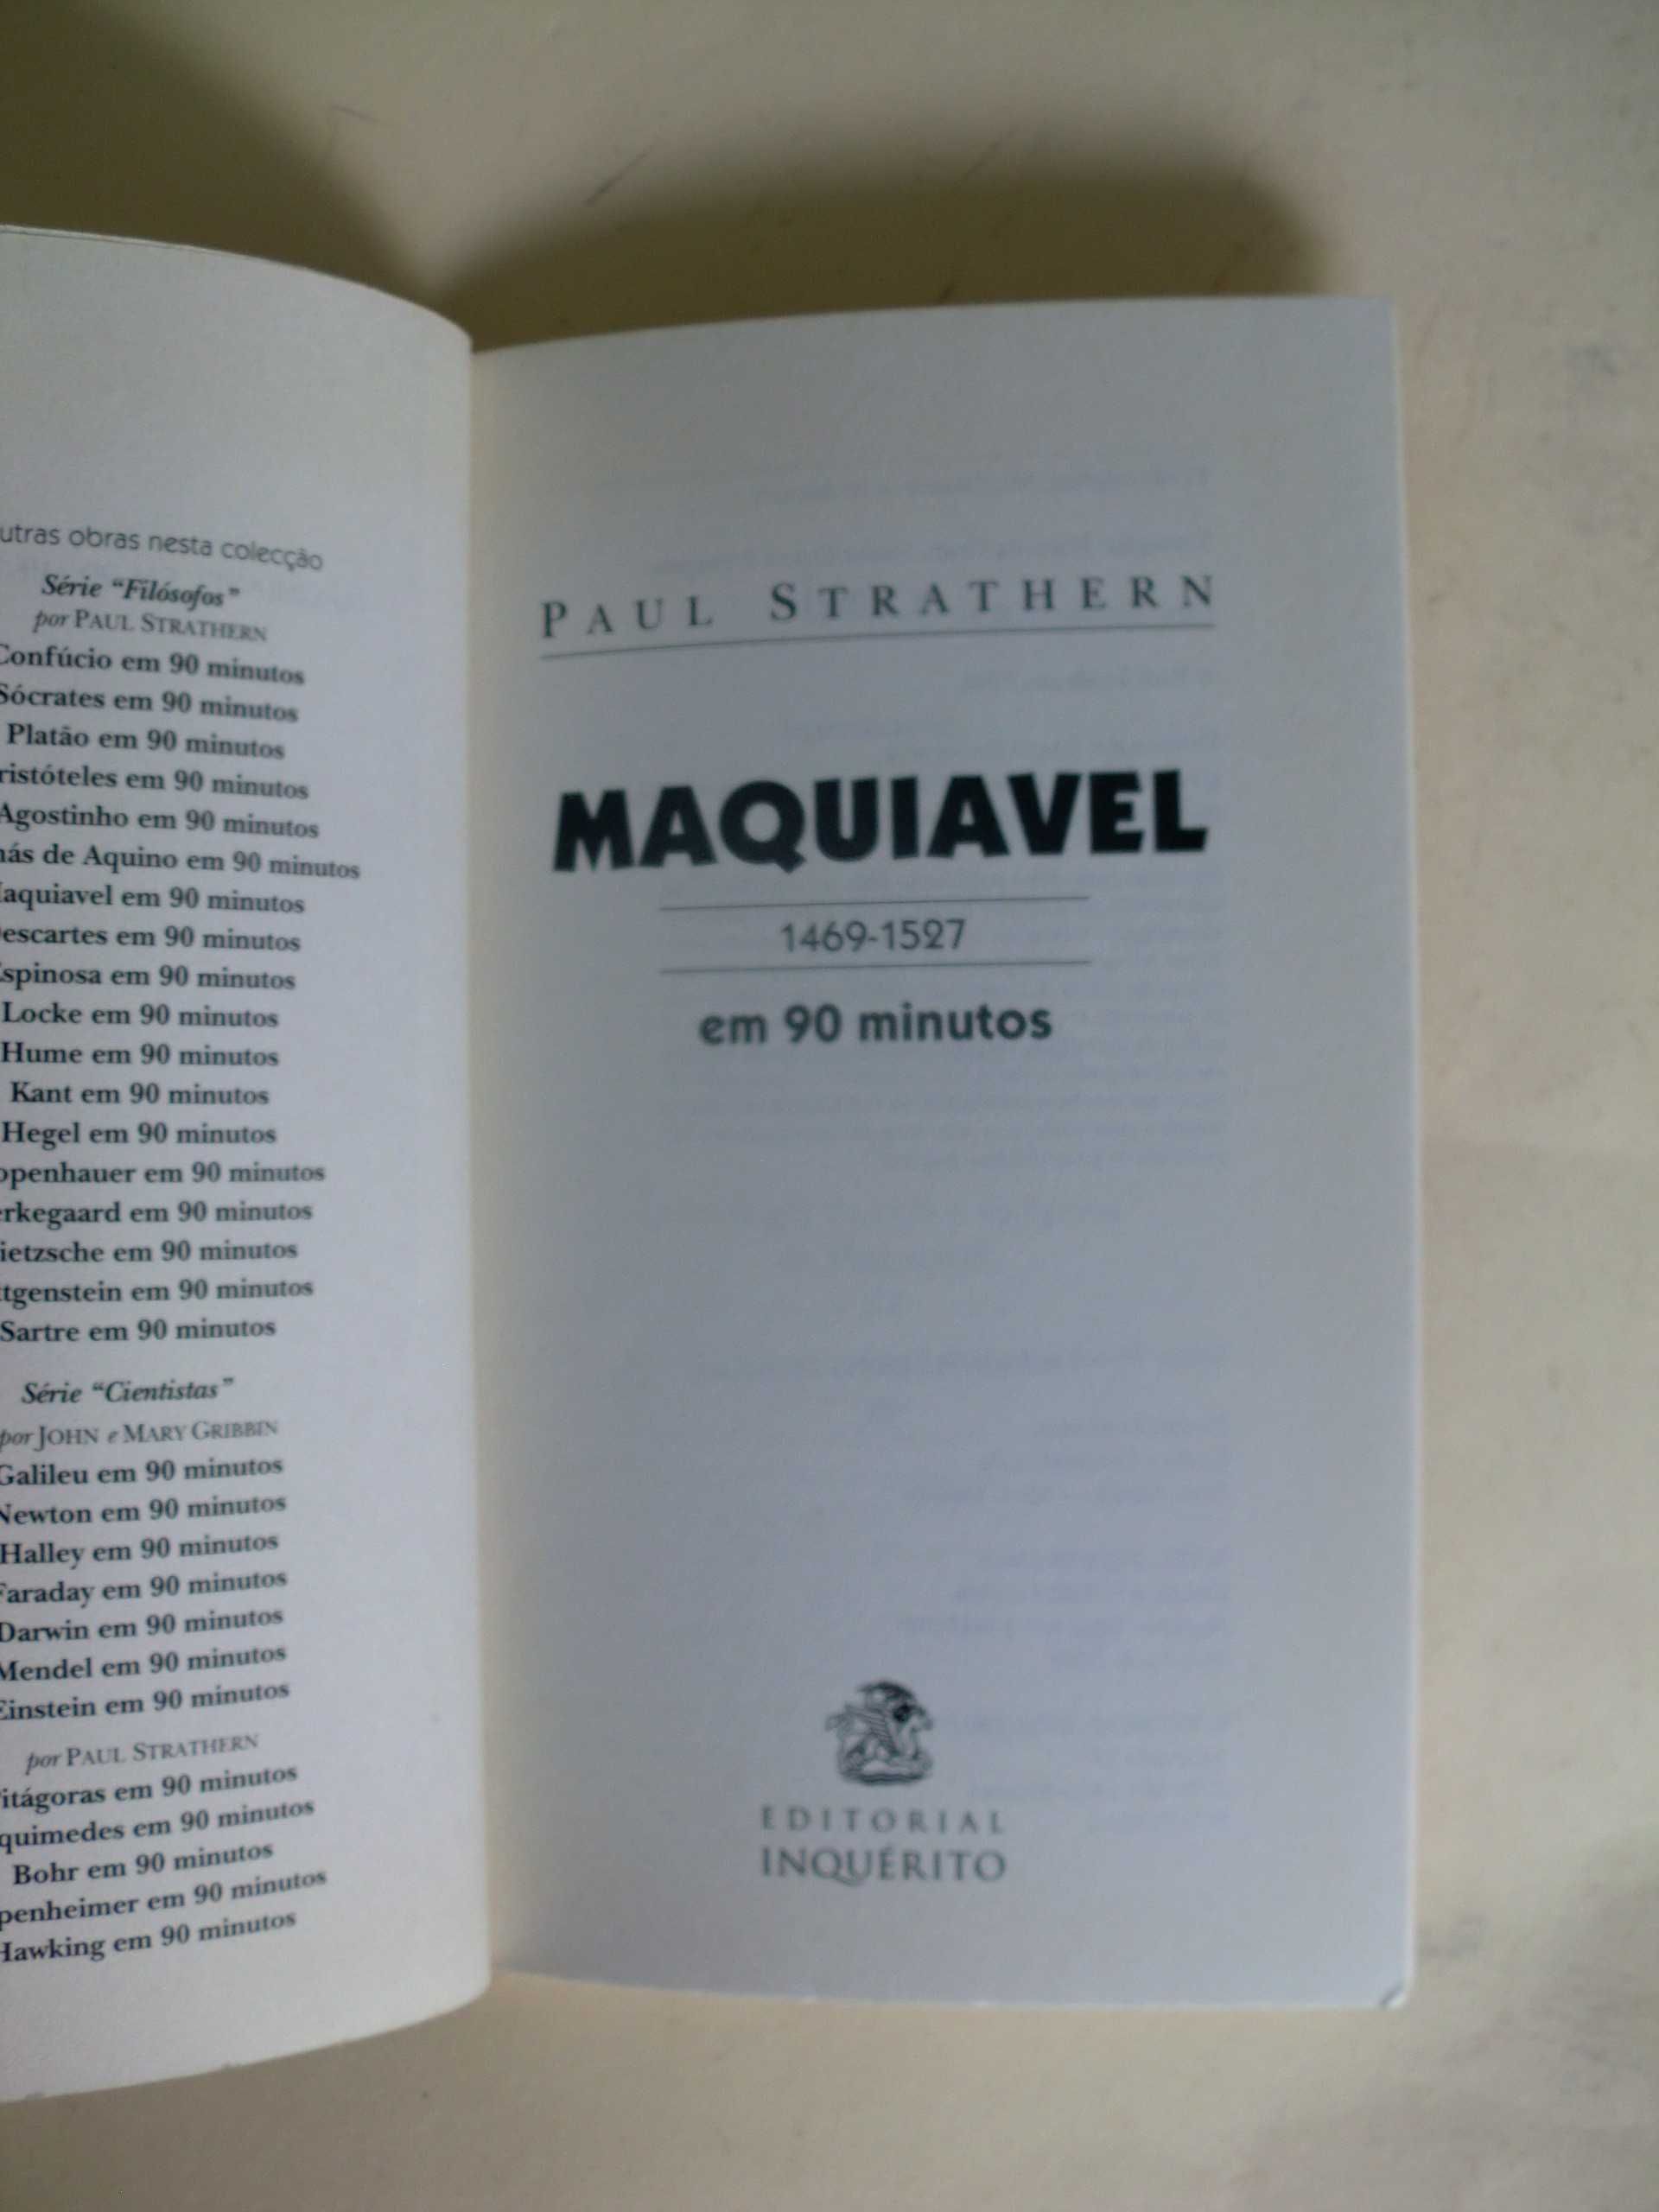 Espinosa / Maquiavel em 90 minutos de Paul Strathern